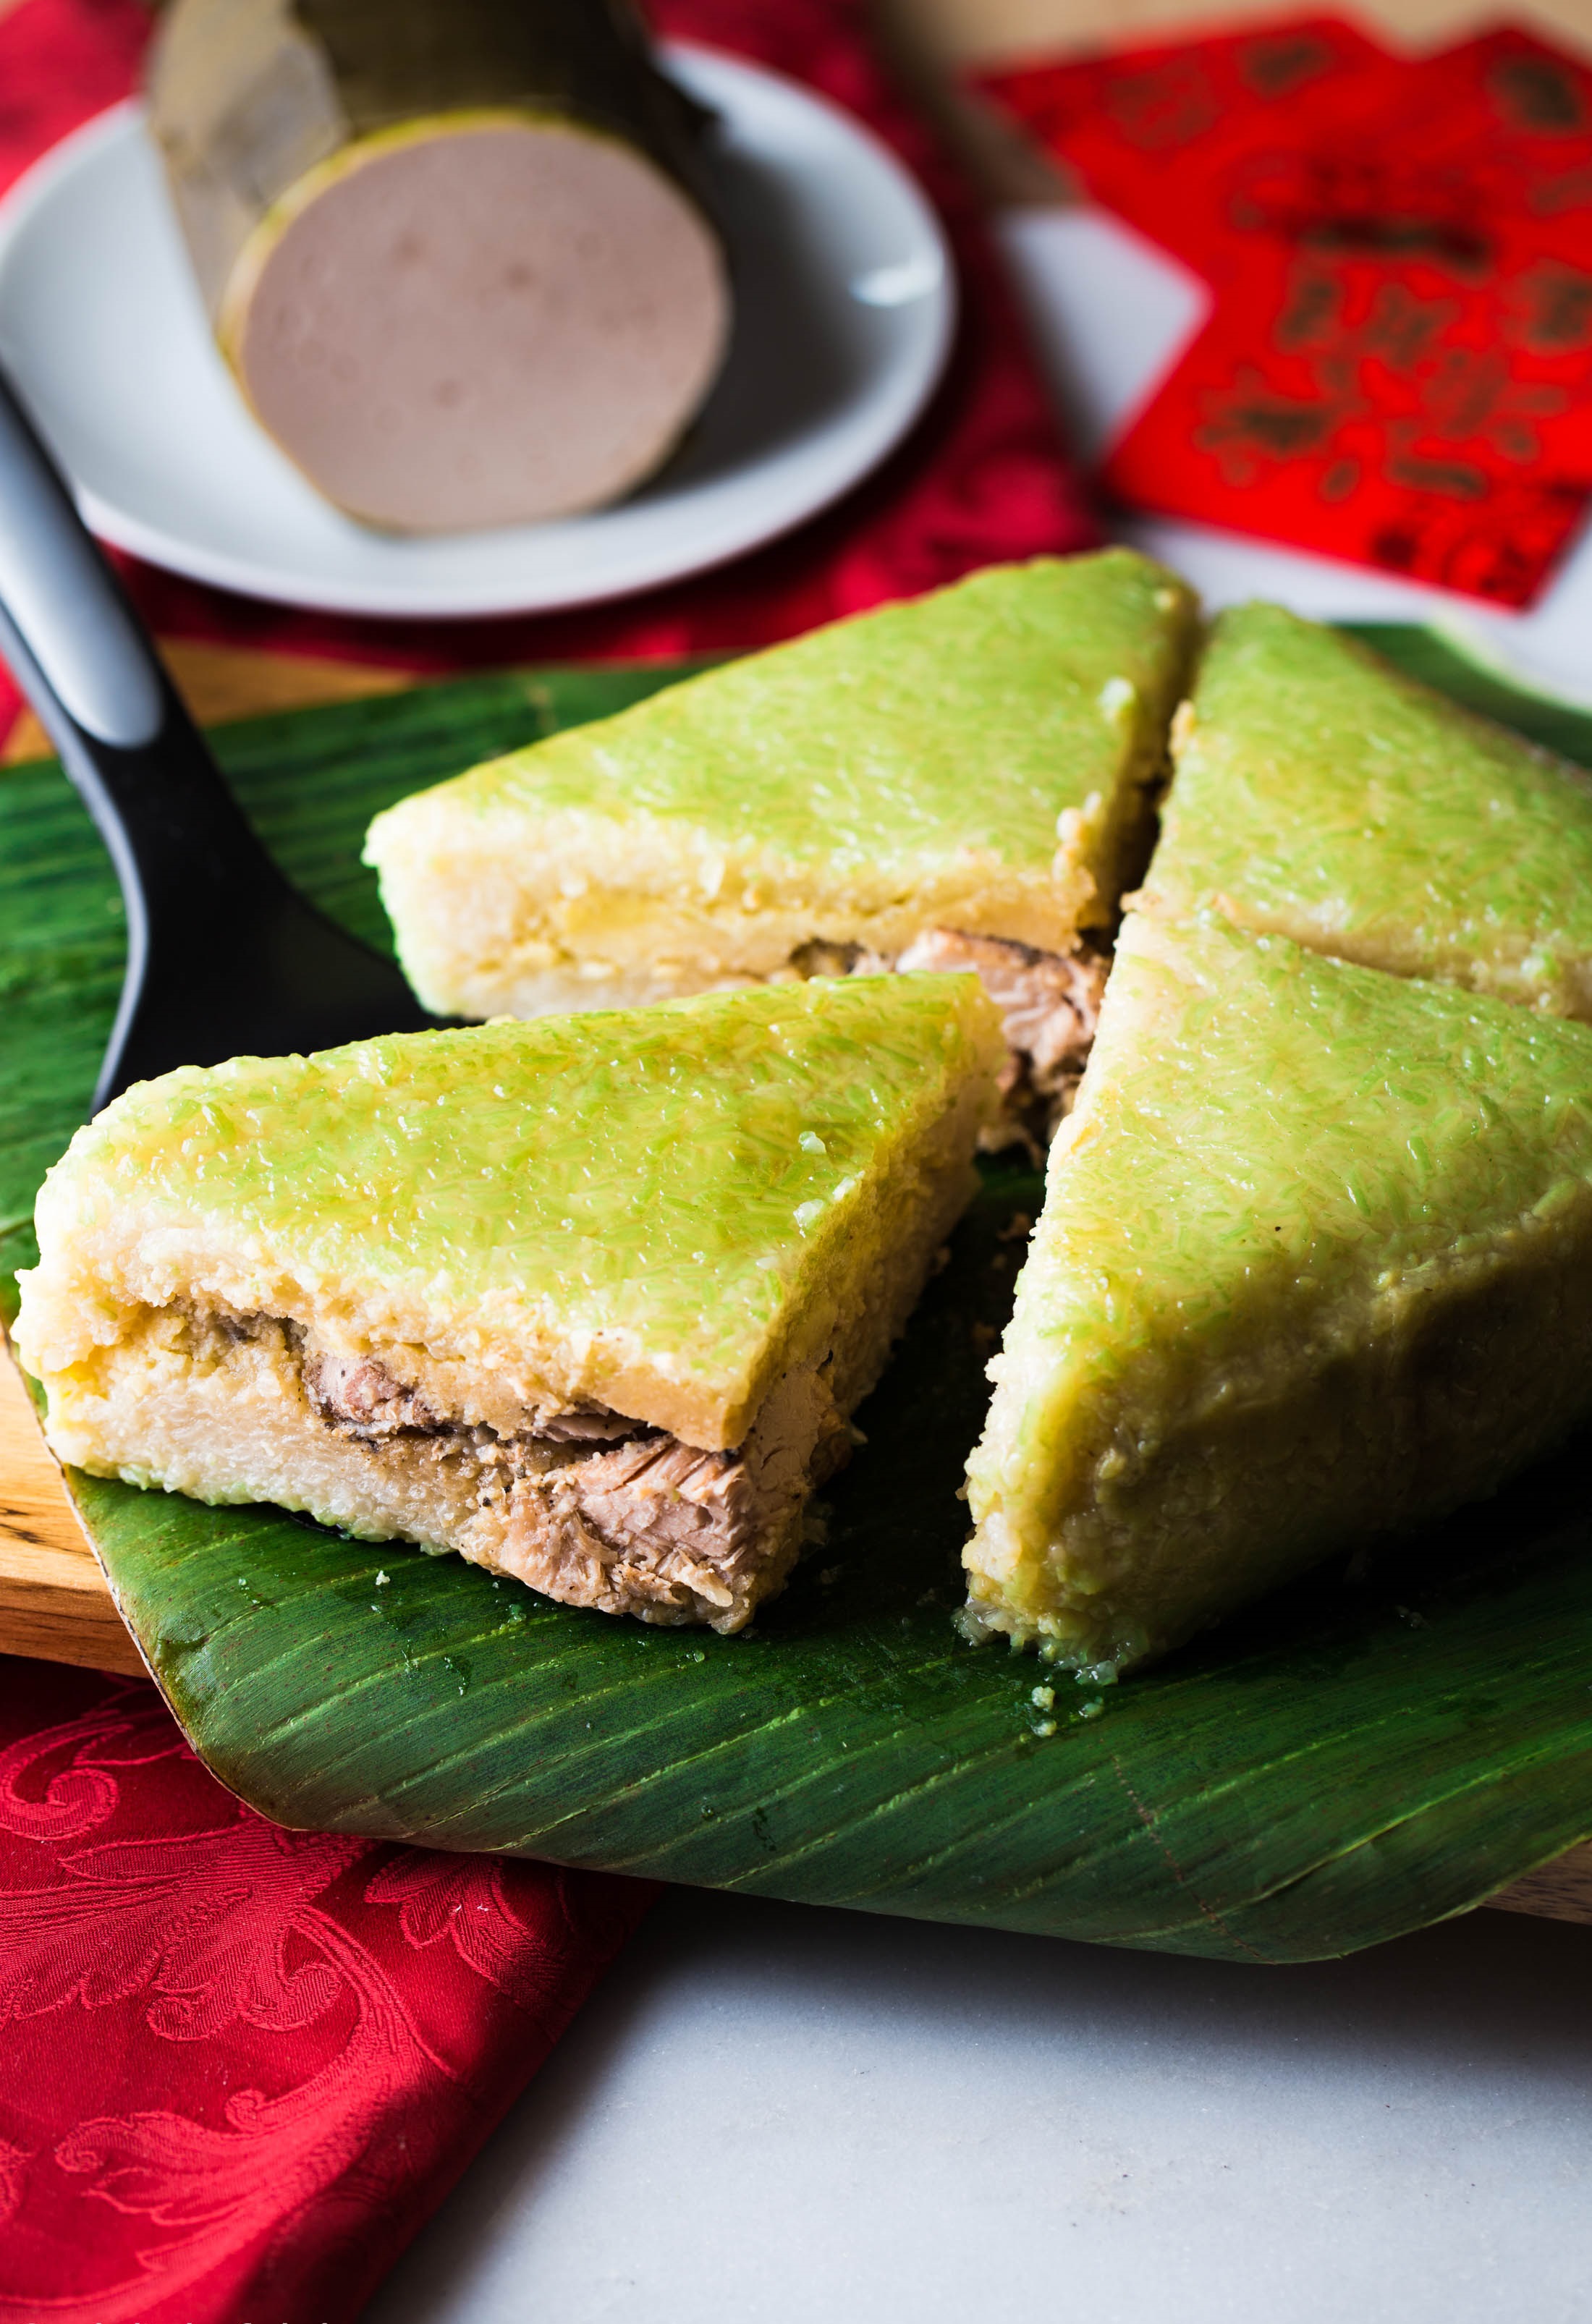 Hình ảnh bánh chưng không chỉ đẹp mắt mà còn đầy ý nghĩa. Nếu bạn yêu thích ẩm thực Truyền thống Việt Nam hay muốn tìm hiểu về nền văn hóa đặc sắc của dân tộc ta, hãy xem các hình ảnh về bánh chưng. Chắc chắn bạn sẽ cảm thấy thú vị và hứng thú!